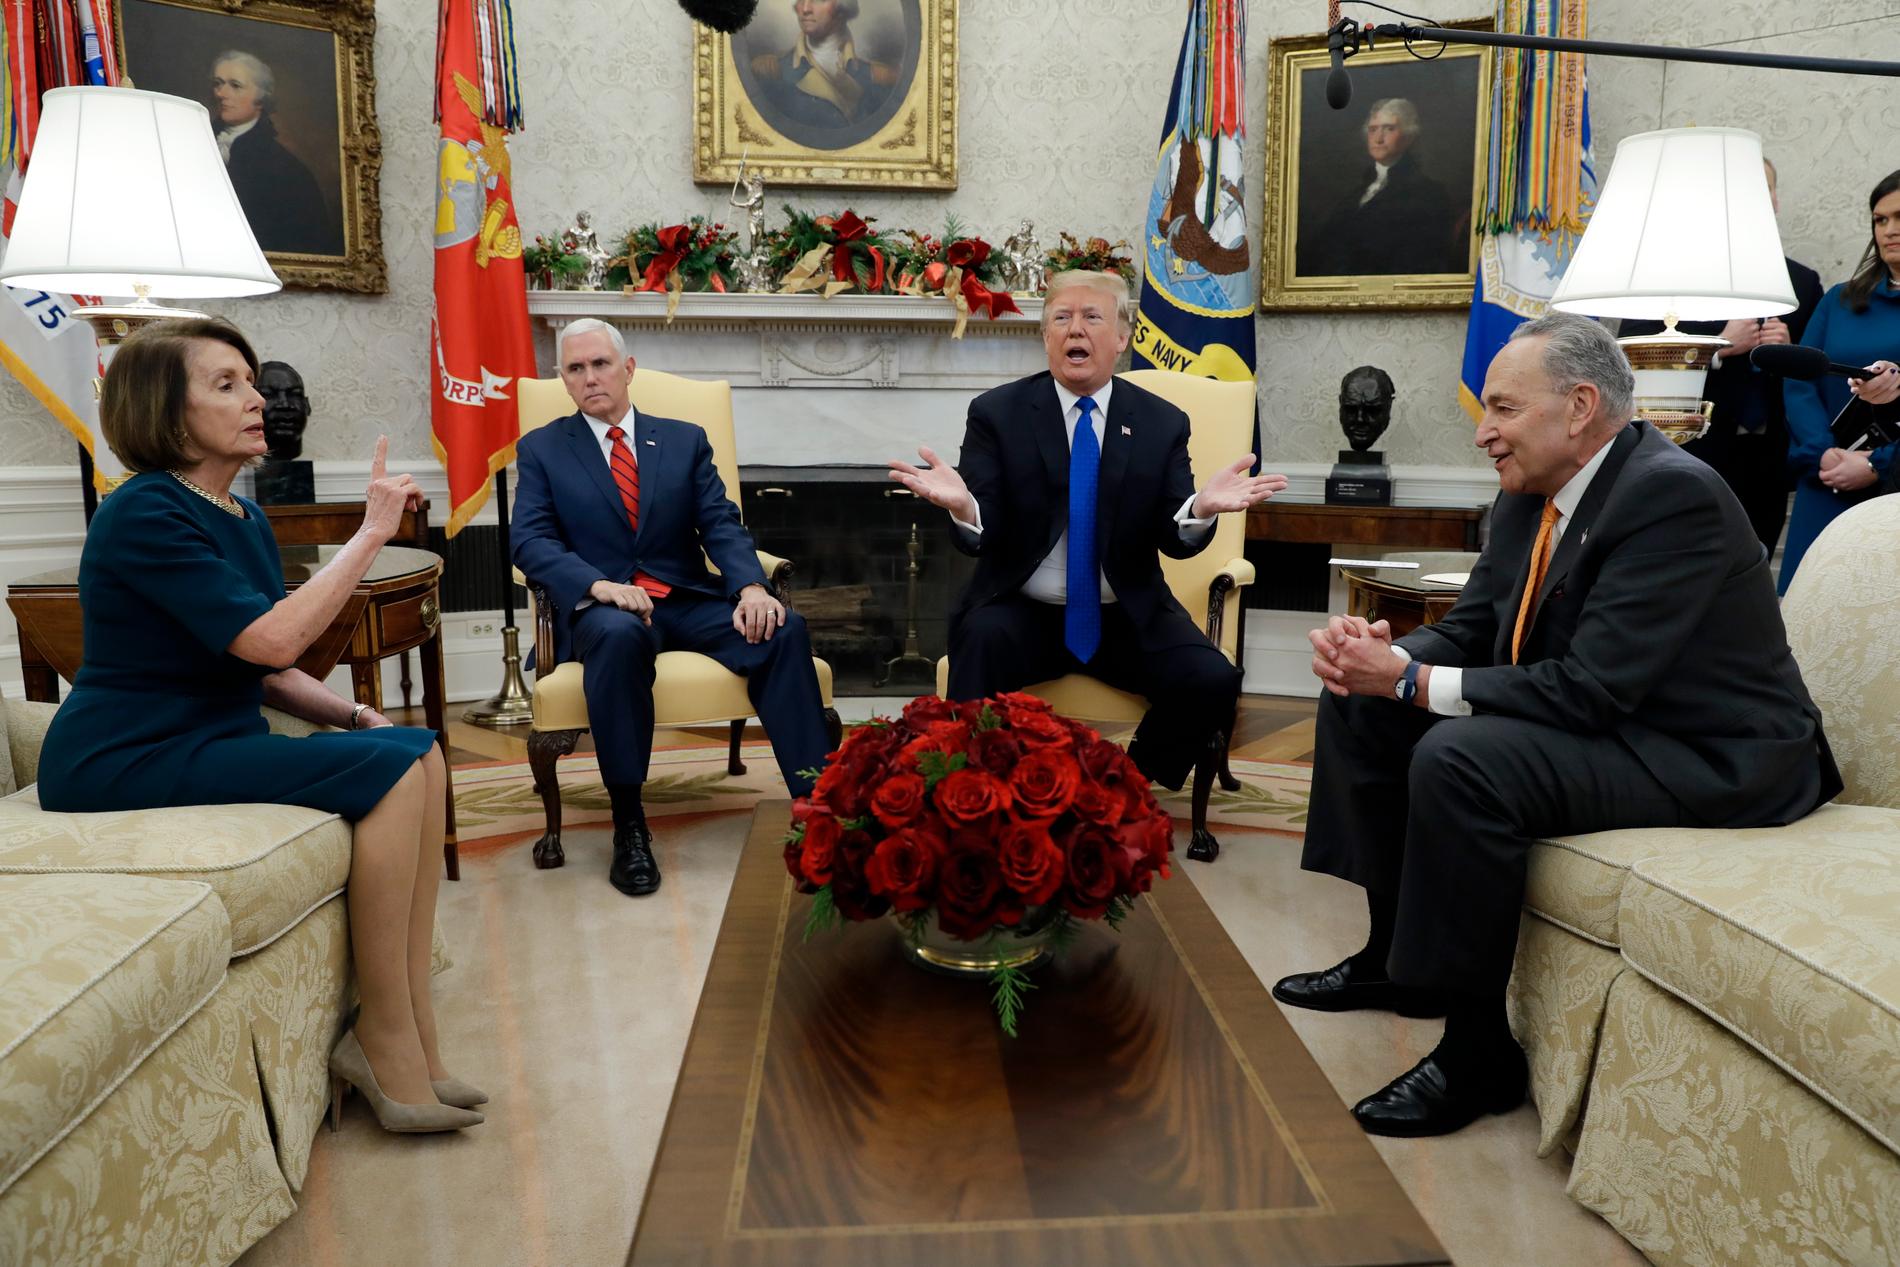 President Donald Trump och vicepresident Mike Pence tillsammans med representanthusets demokratiska talman Nancy Pelosi och hennes partikamrat, senatens minoritetsledare Chuck Schumer, vid ett möte i Ovala rummet i december.